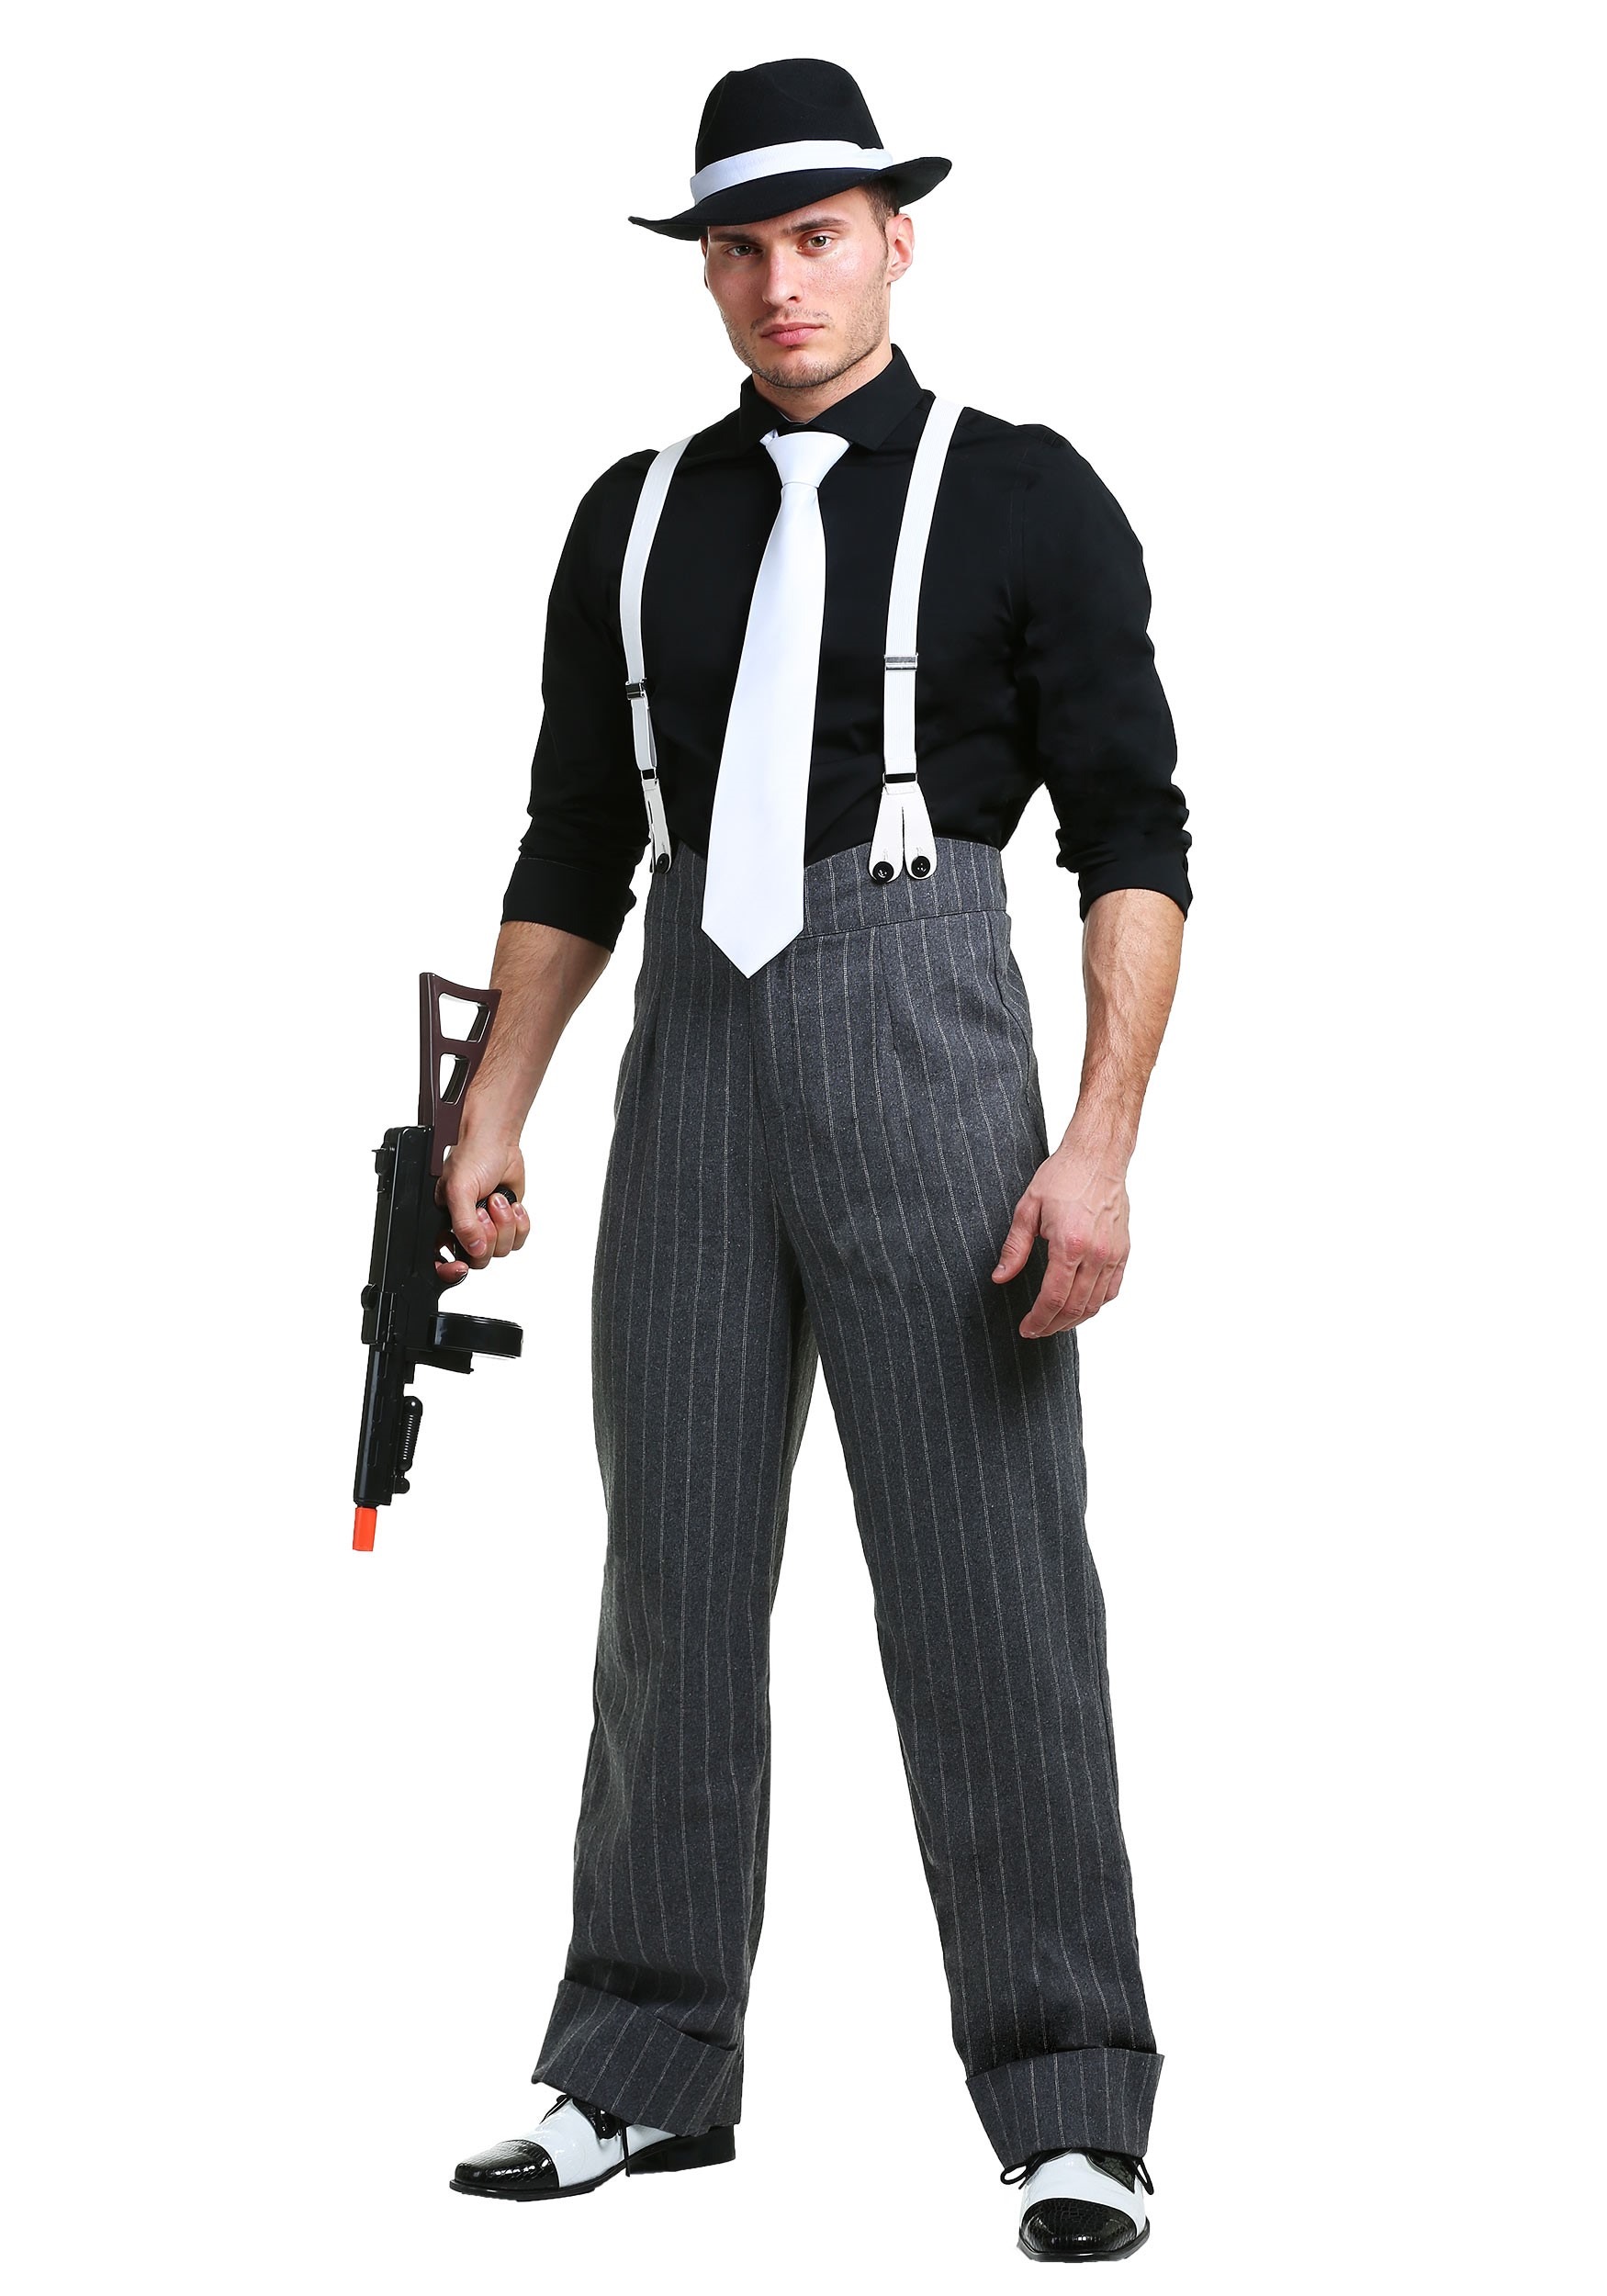 Mob Boss Costume For Men 